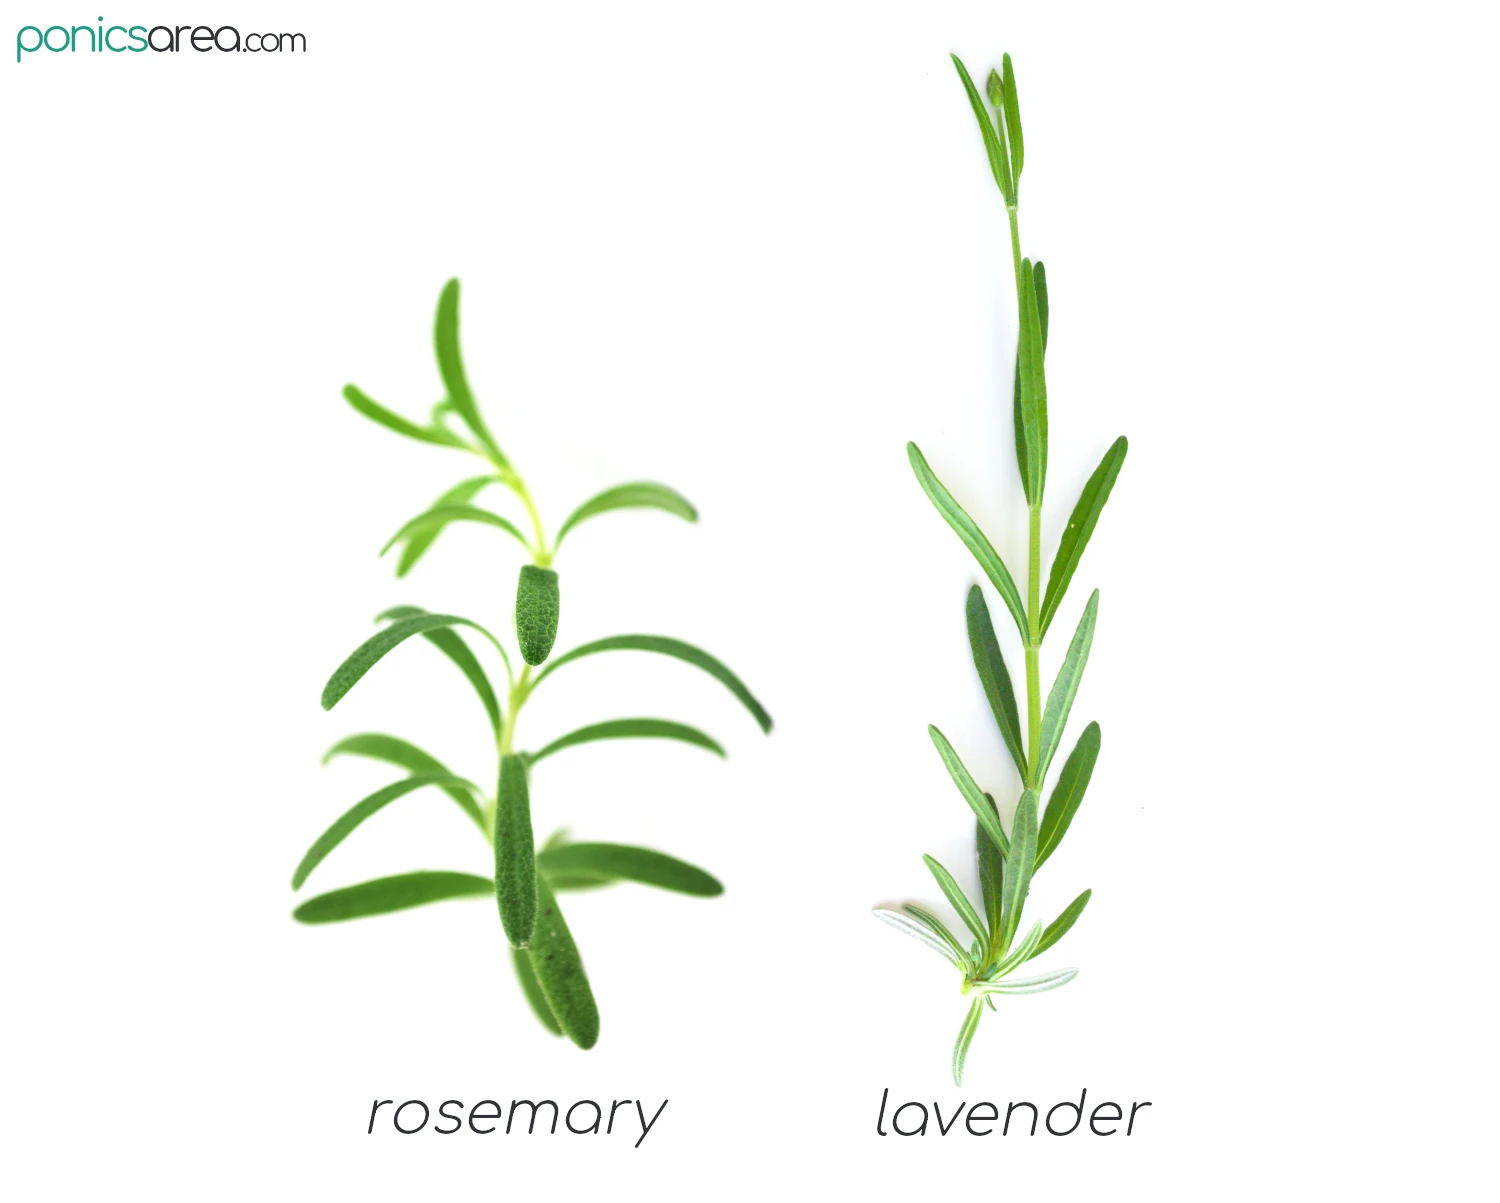 rosemary vs lavender appearance